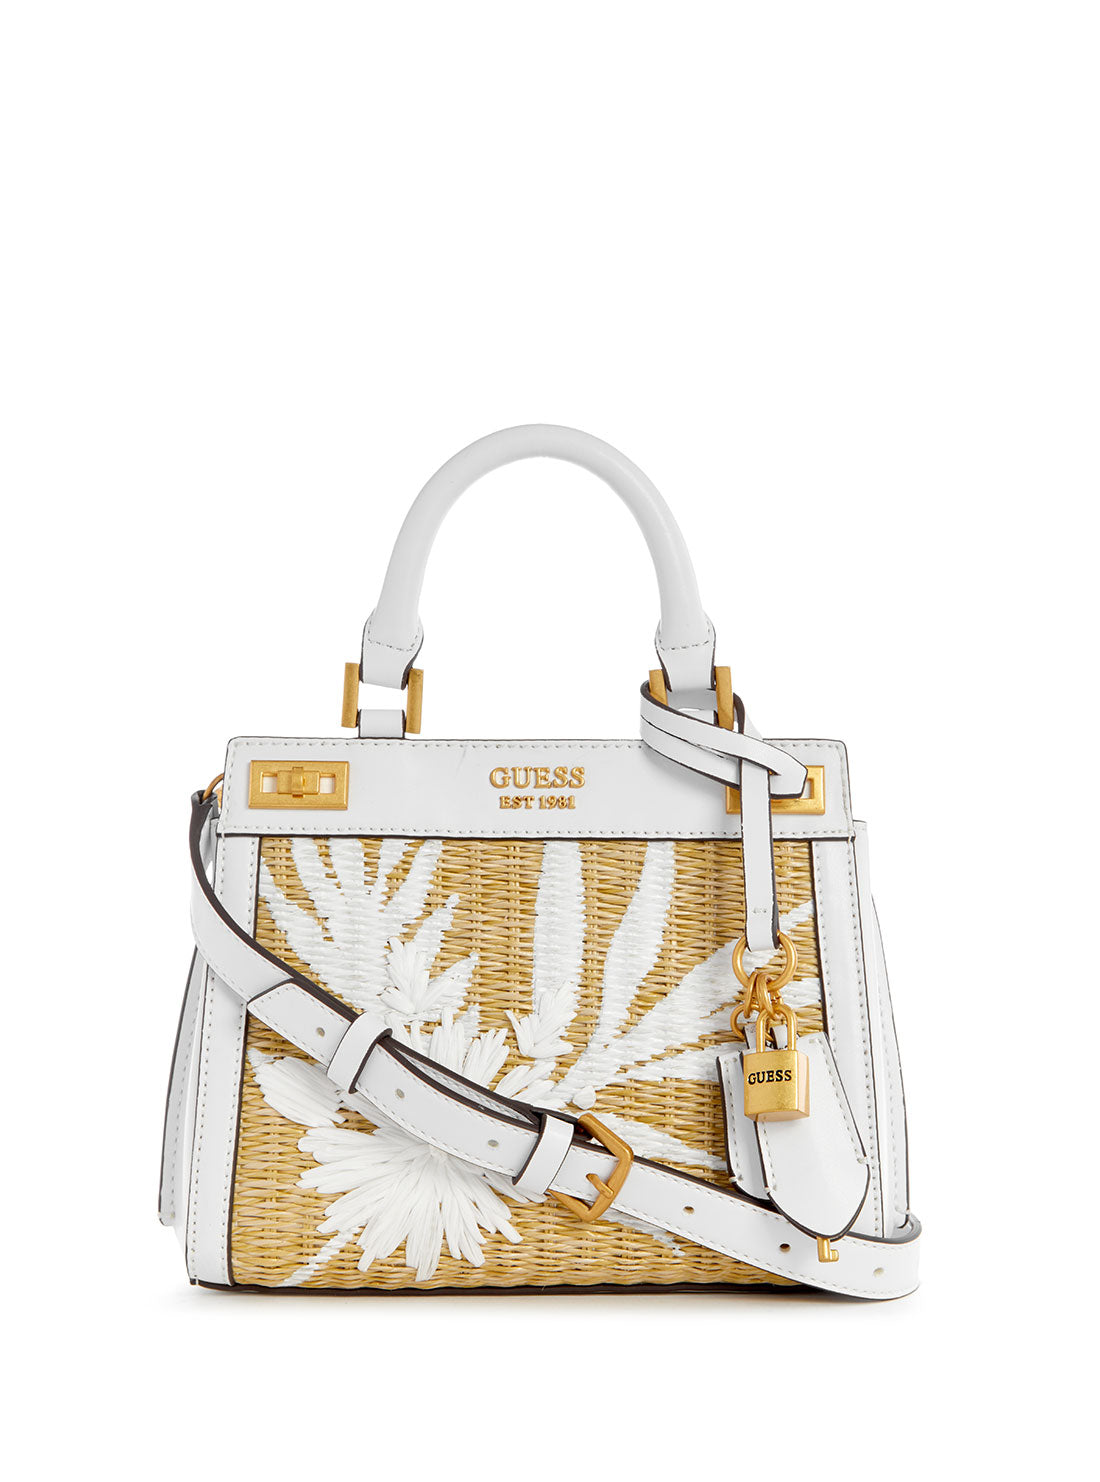 GUESS Women's White Floral Katey Mini Satchel Bag WA787073 Front View